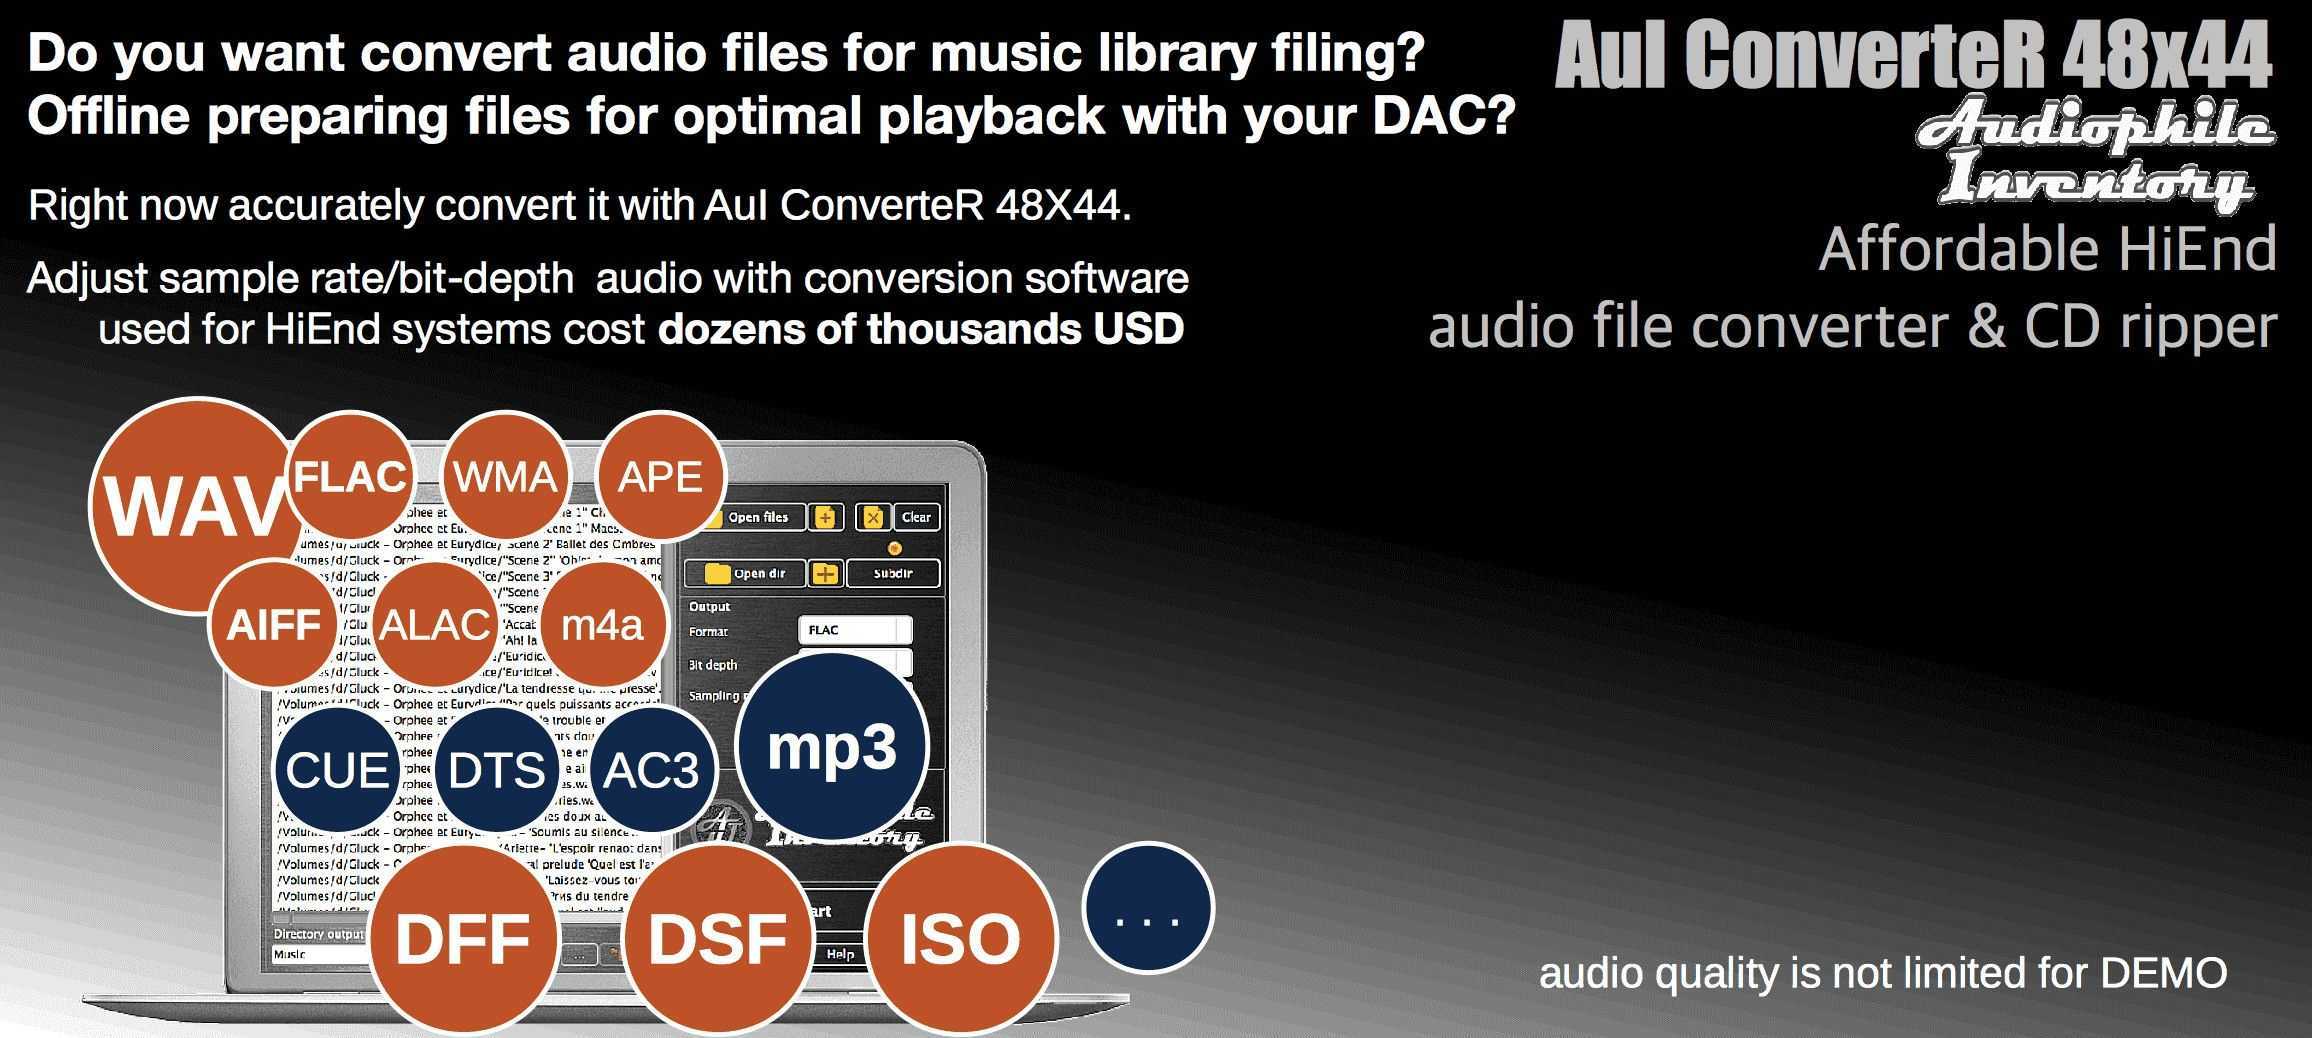 Hd audio converter iso dff dsf flac wav aiff mp3 - aui converter 48x44